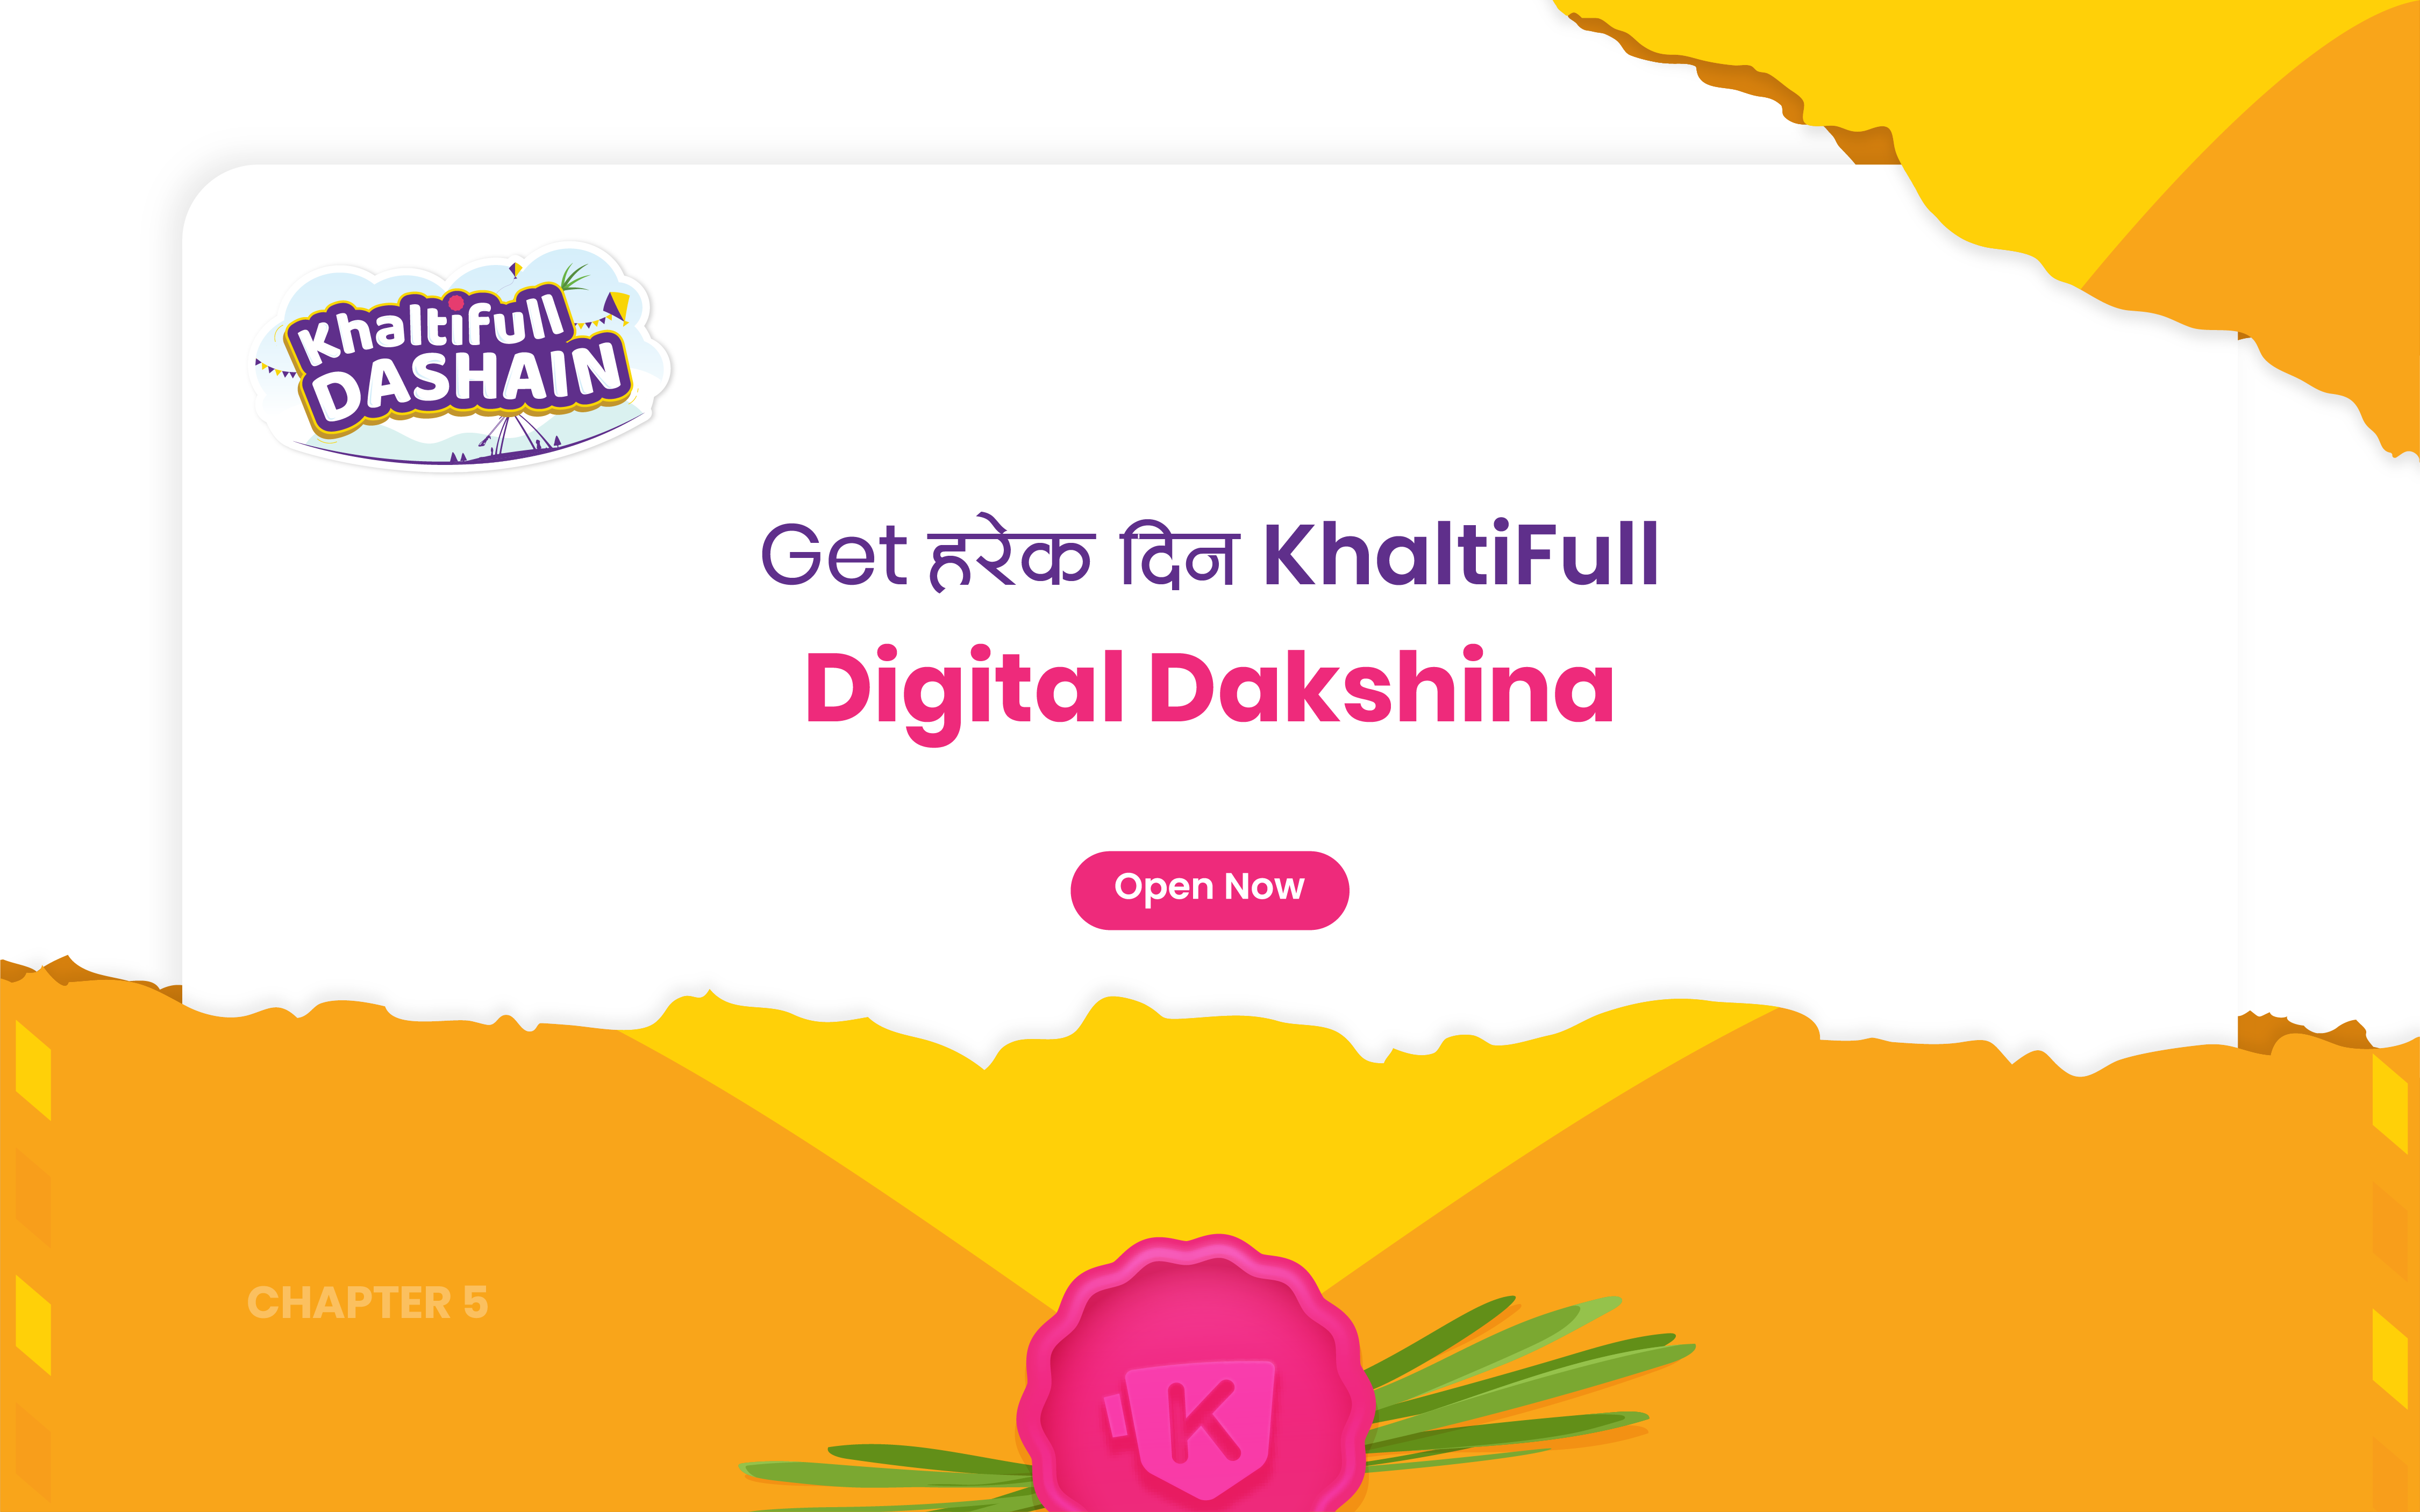 This Khalti Full Dashain:  Get Daily Dakshina from Khalti!